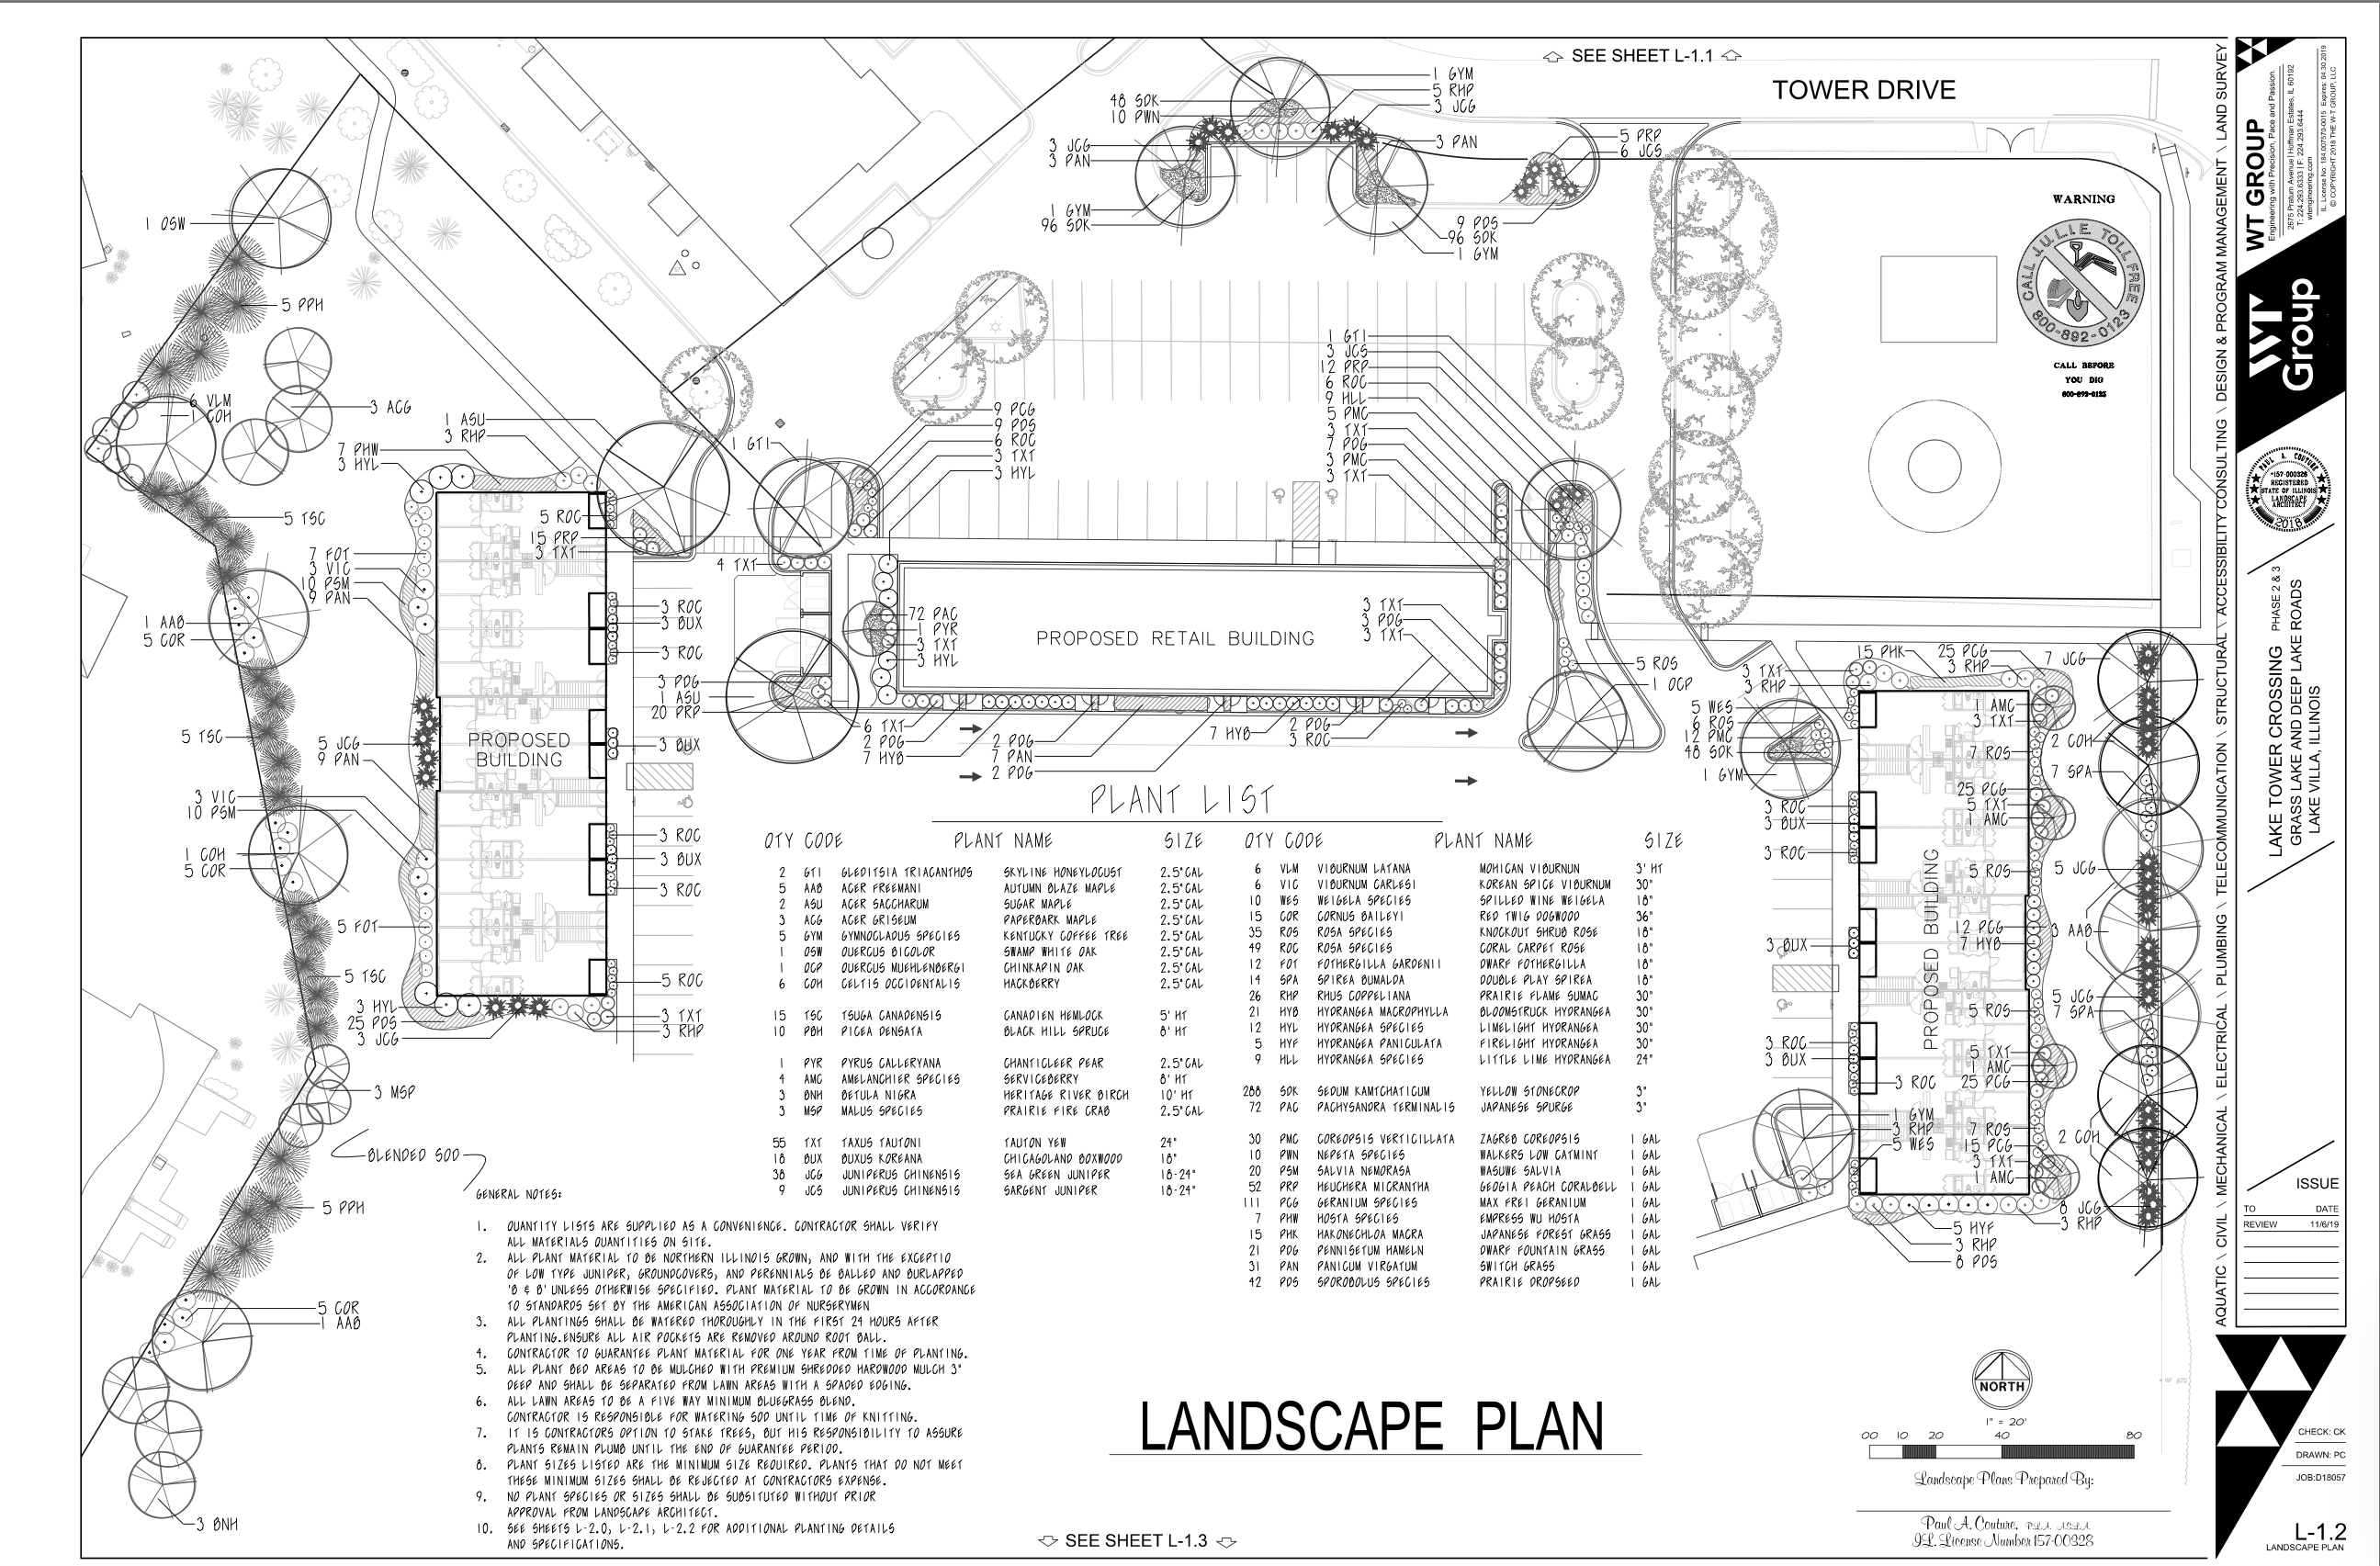 Tower Drive Development Inc.- Landscape Plans